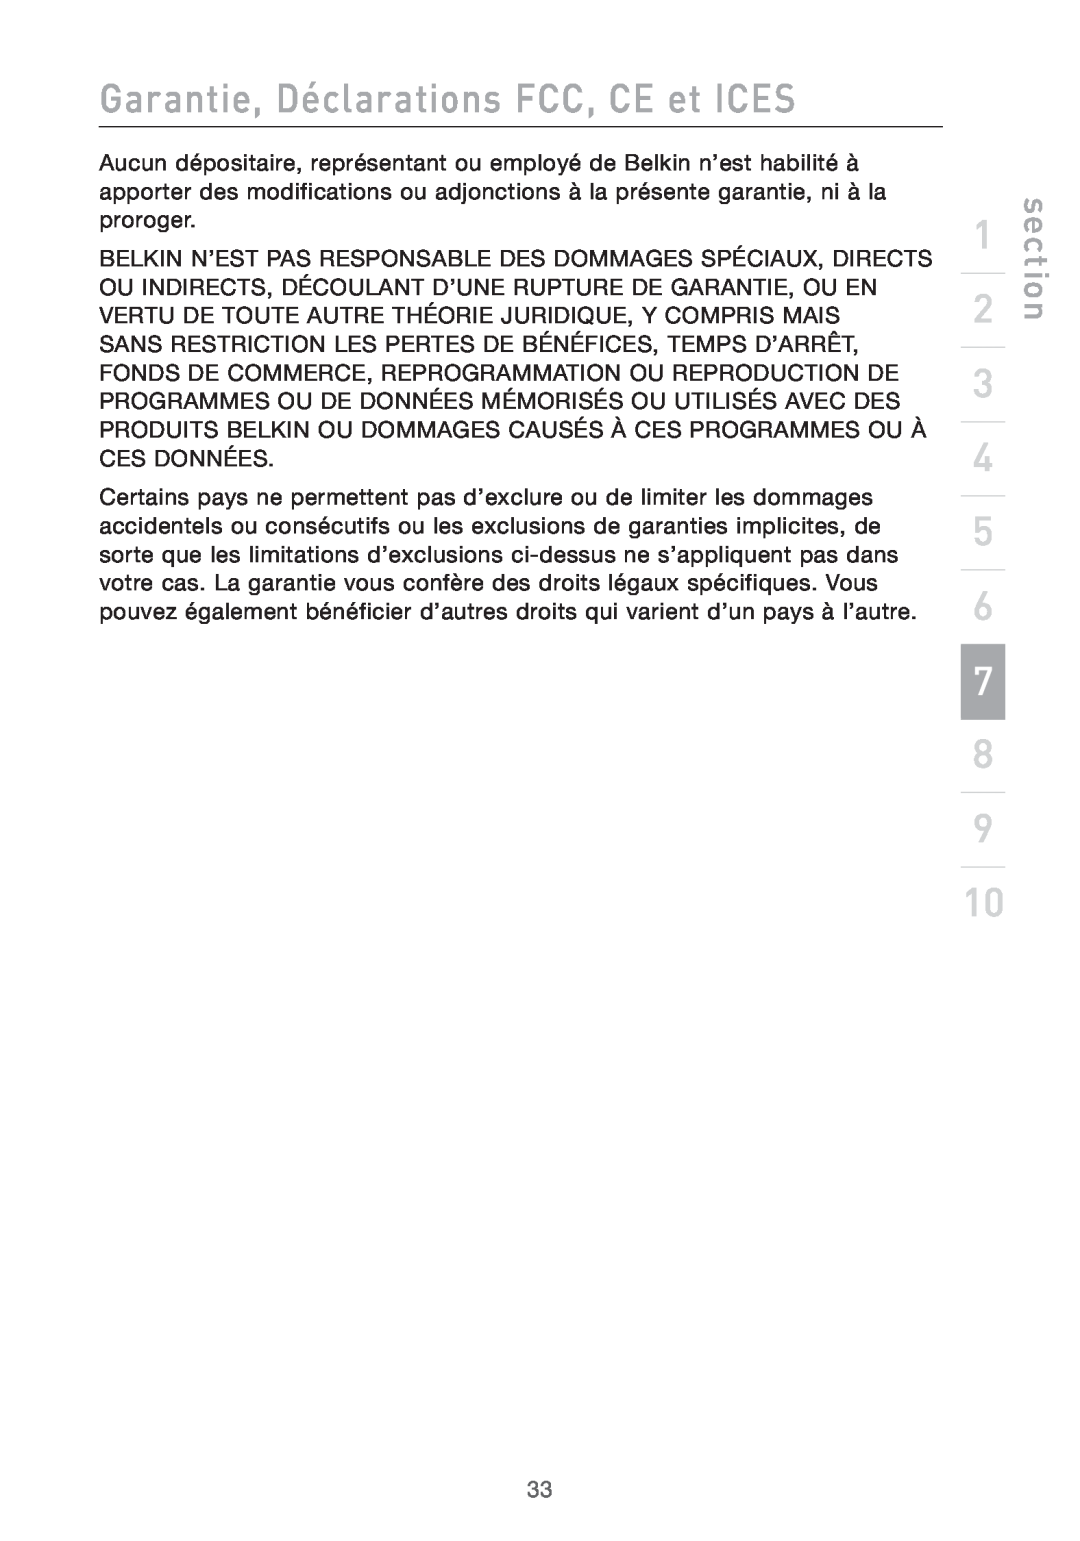 Belkin PRO2 PS/2 user manual Garantie, Déclarations FCC, CE et ICES, section 